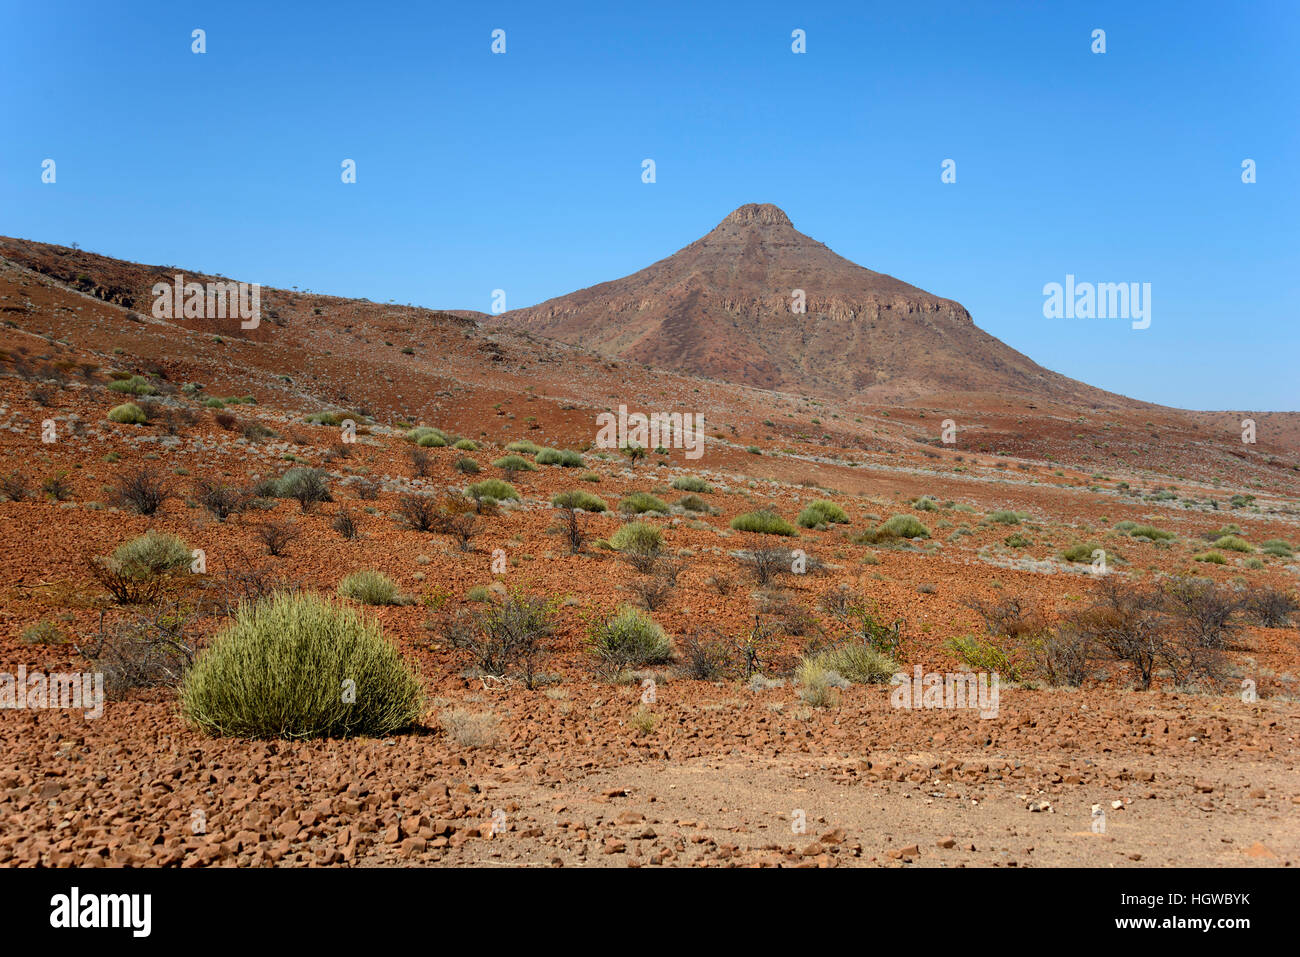 Landscape, C39, Damaraland, Namibia Stock Photo